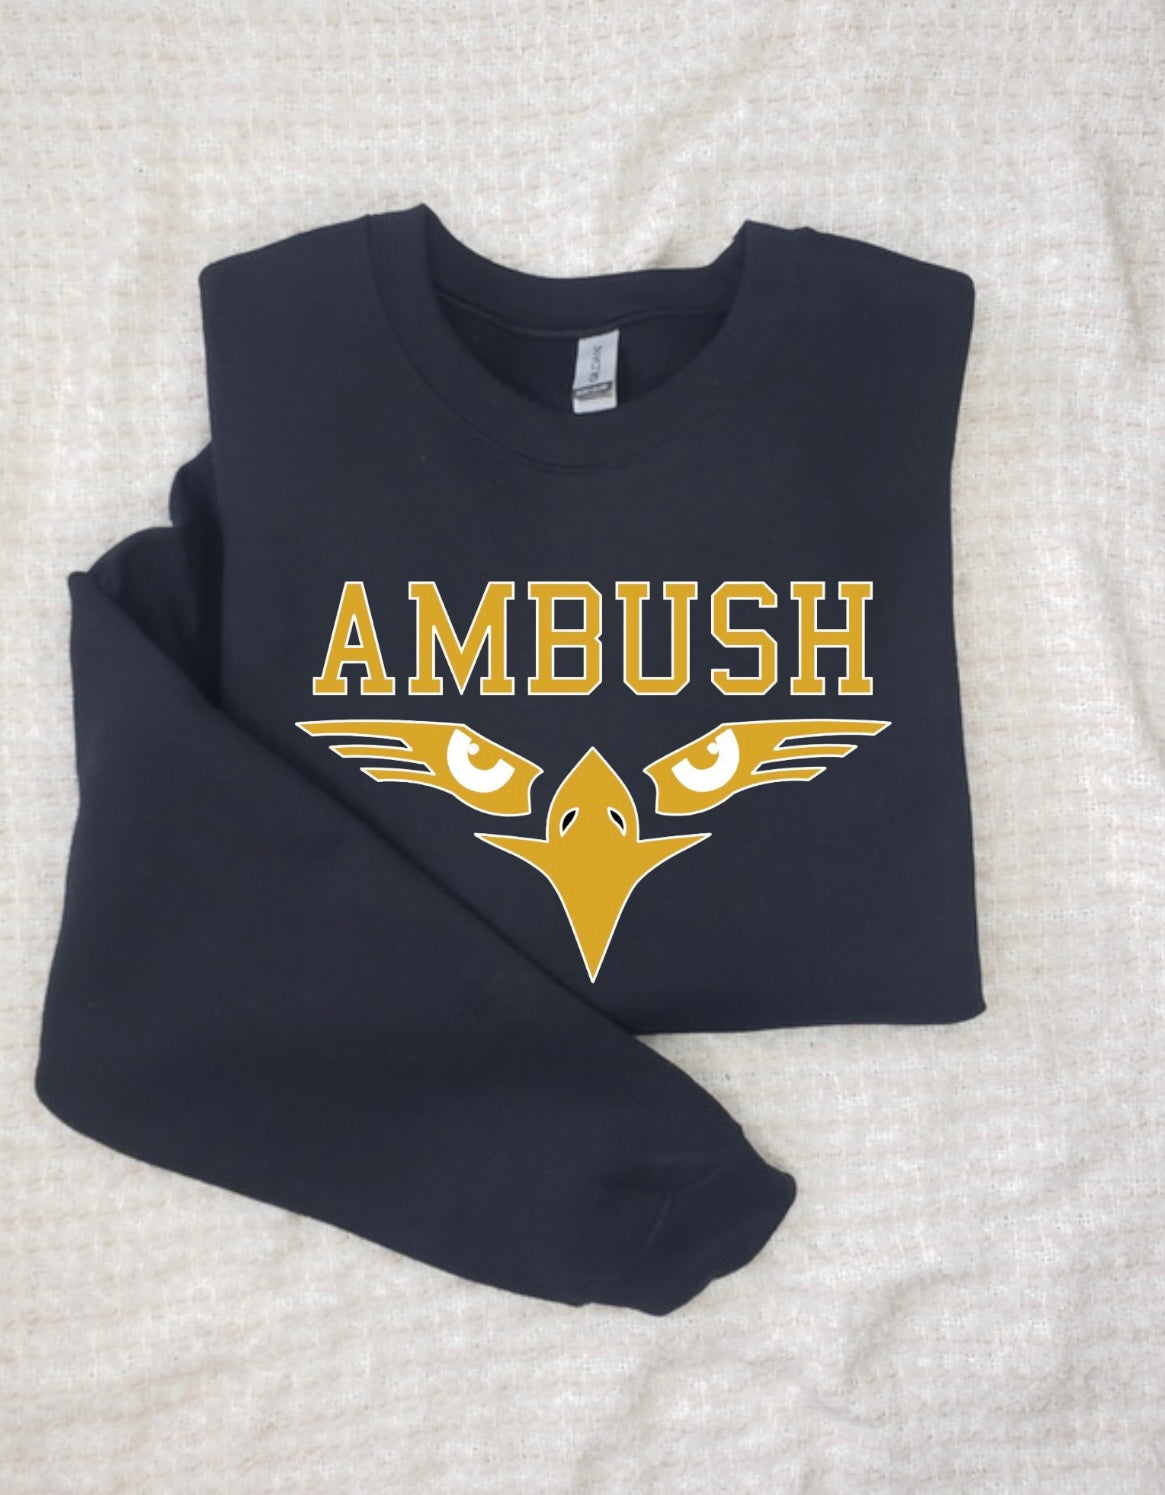 Ambush Crew Sweatshirt - Adult & Kids